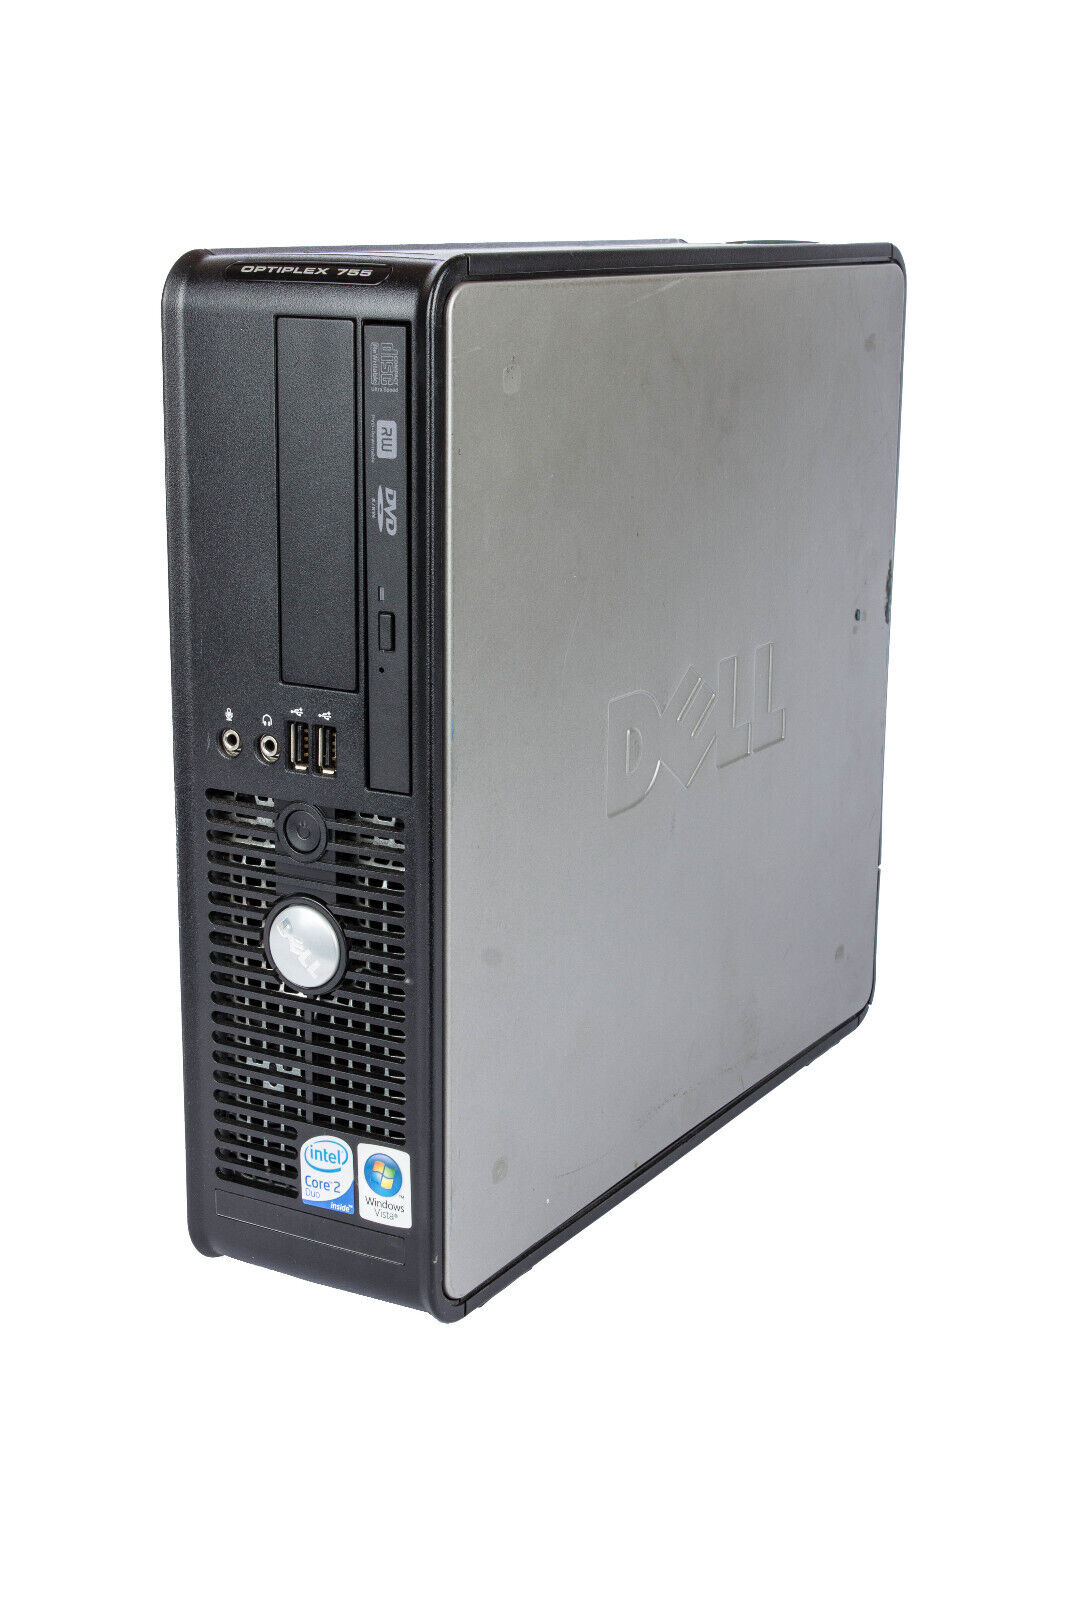 Dell Optiplex 755 SFF Windows XP Pro SP3 32Bit Desktop 500GB HDD 4GB Core2 Duo